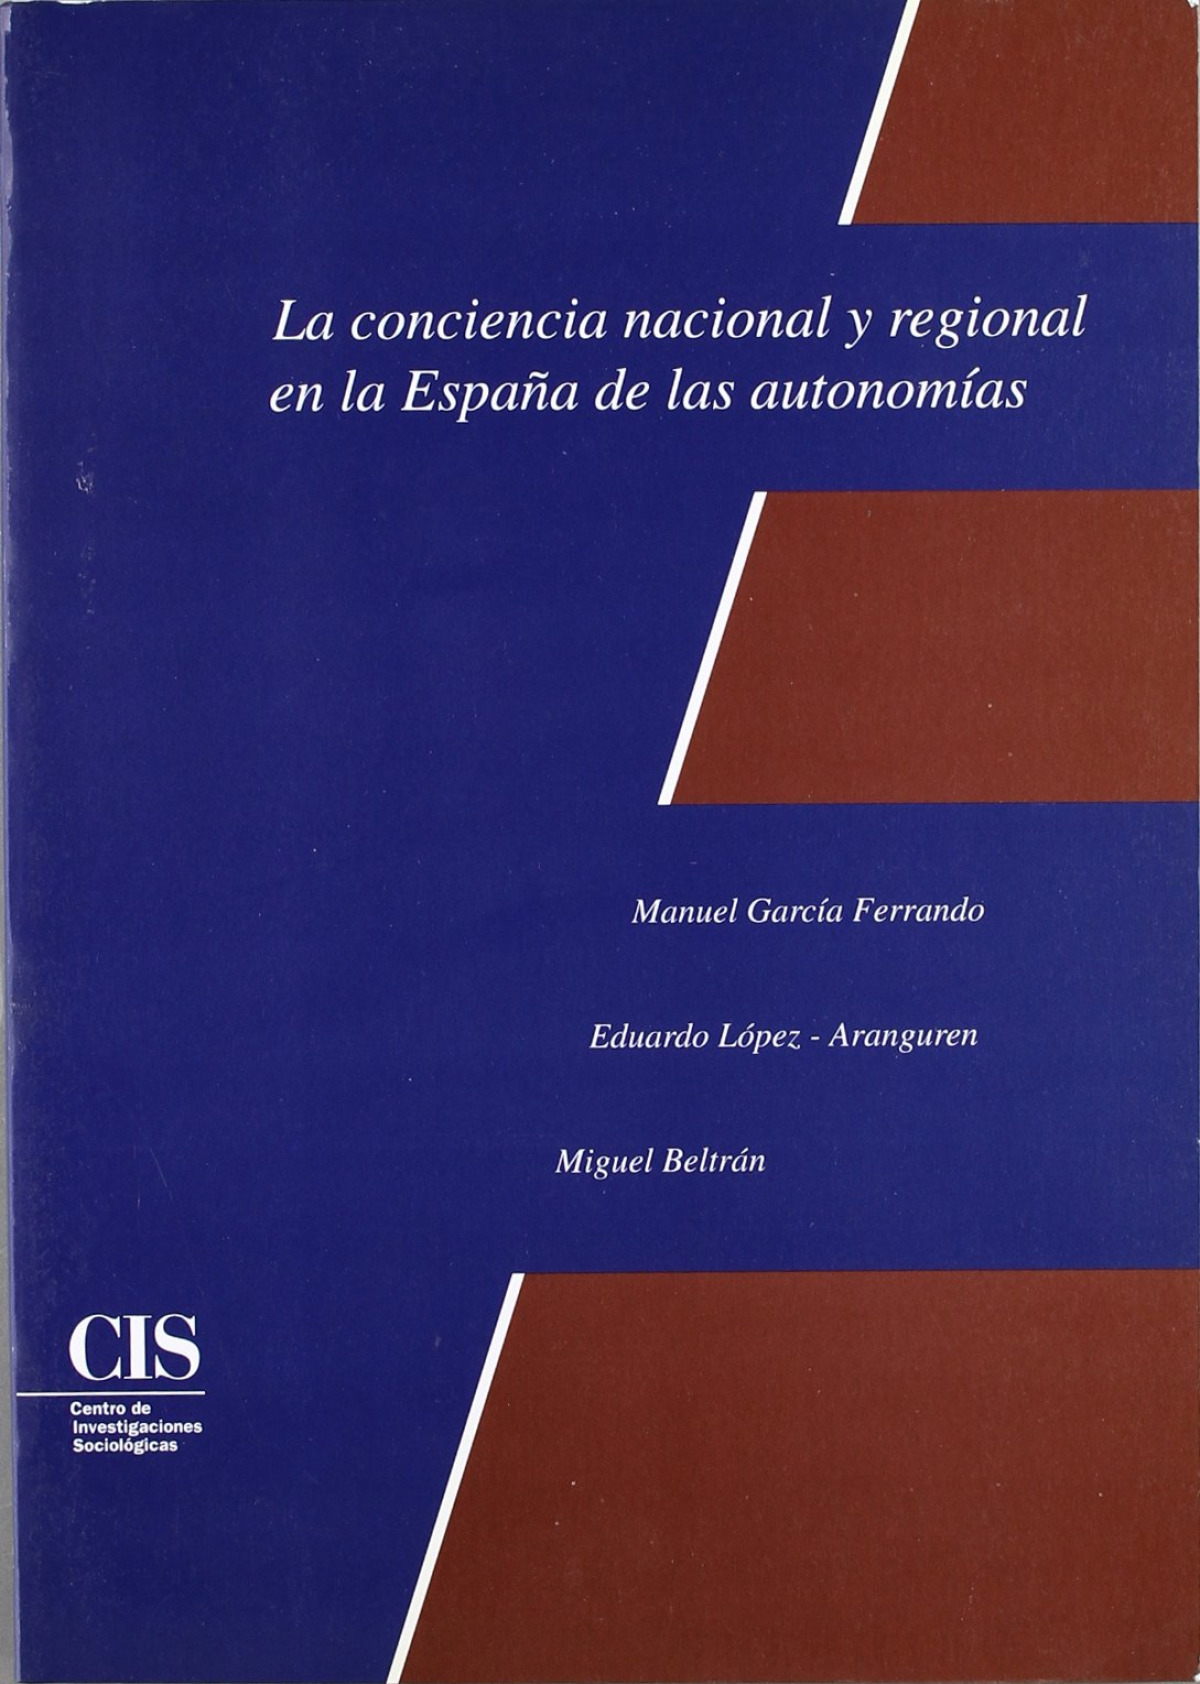 La conciencia nacional y regional en la España de las autonomías - Beltrán Villalva, Miguel / García Ferrando, Manuel / López-Aranguren, Eduardo